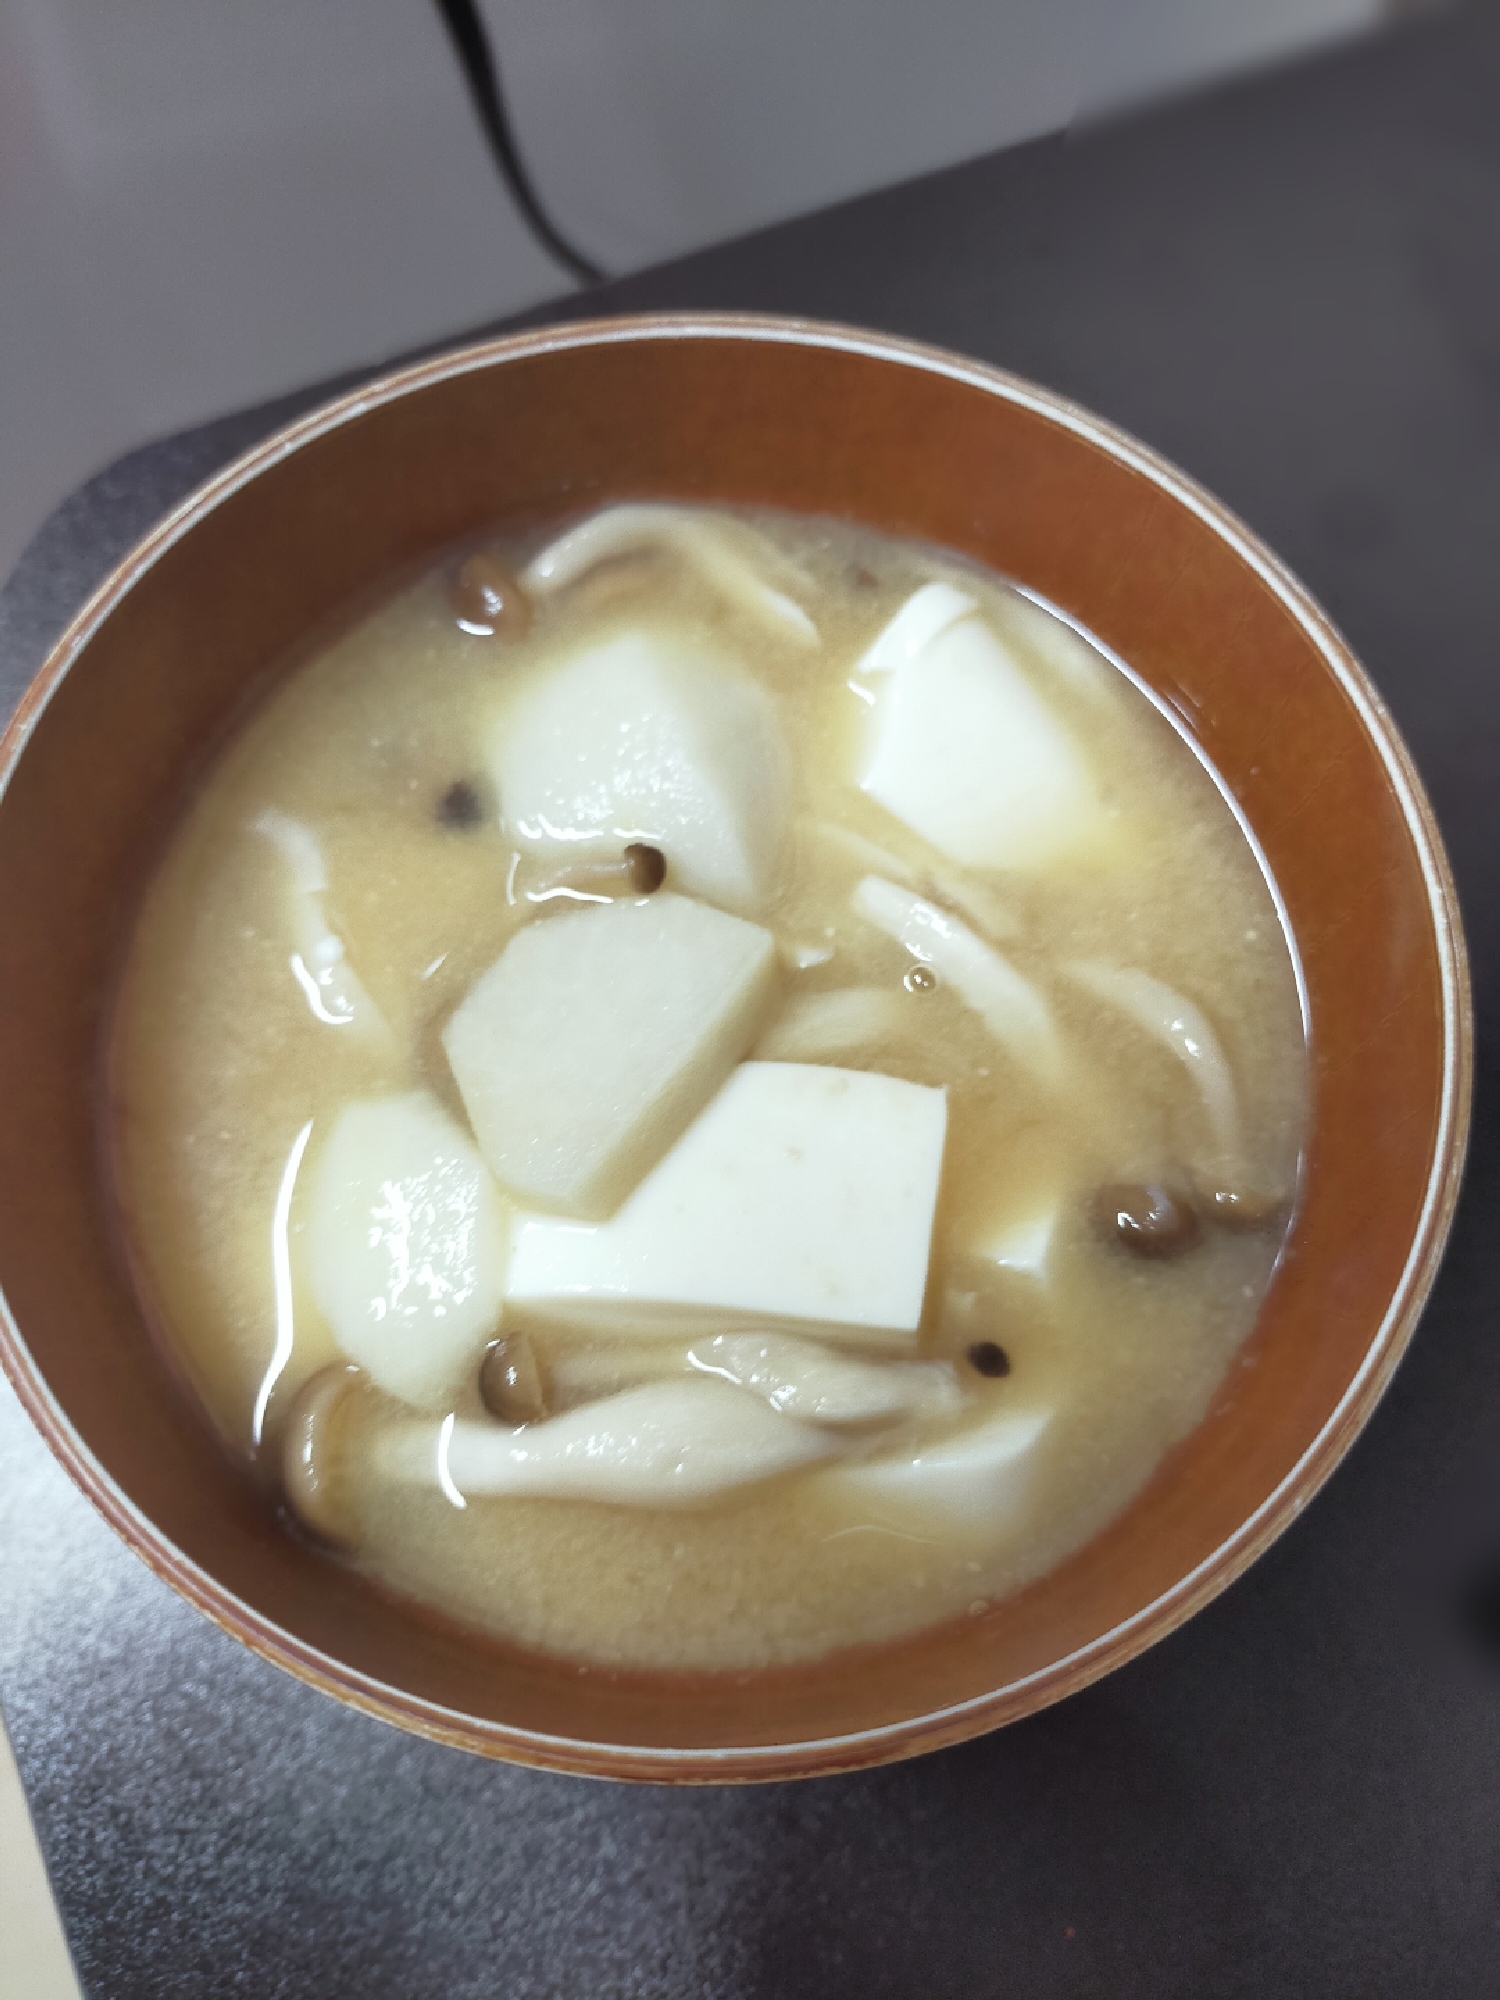 里芋としめじと豆腐のお味噌汁